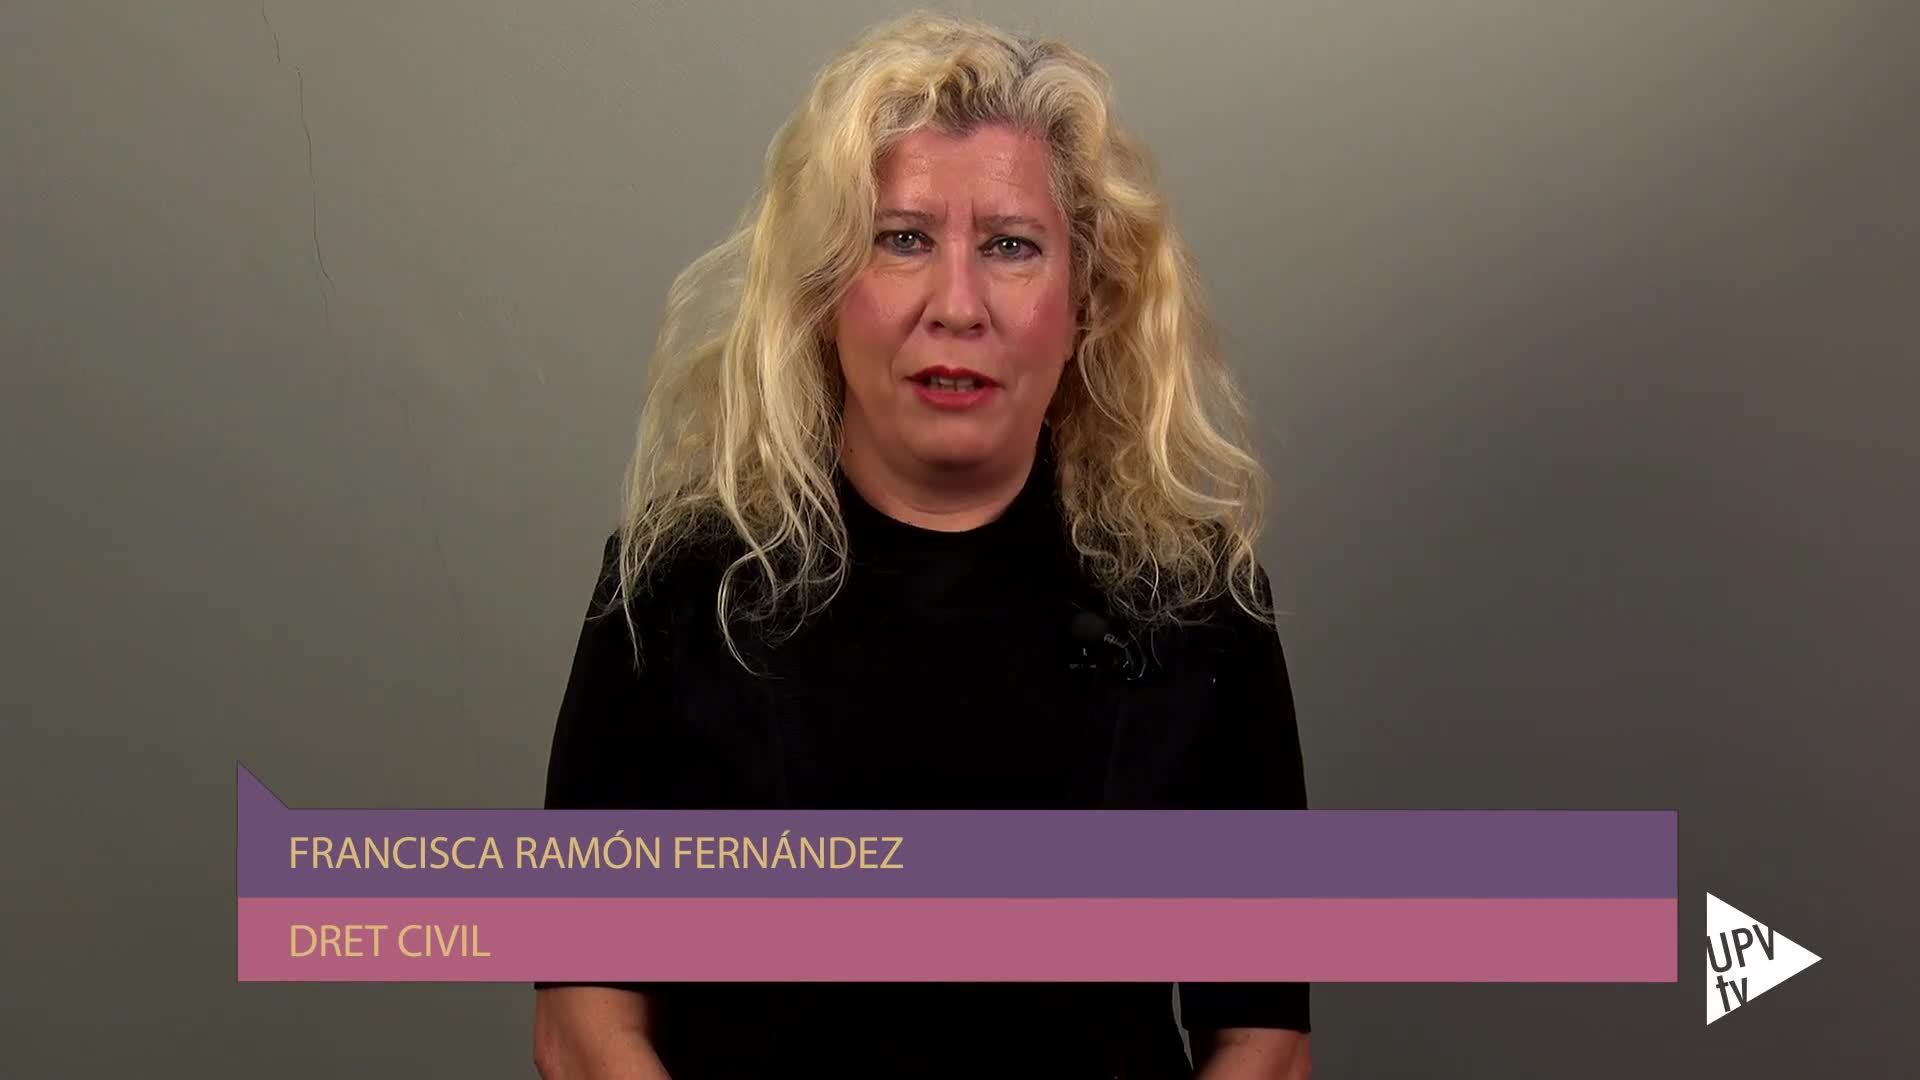 11-02-2019 Francisca Ramón Fernández